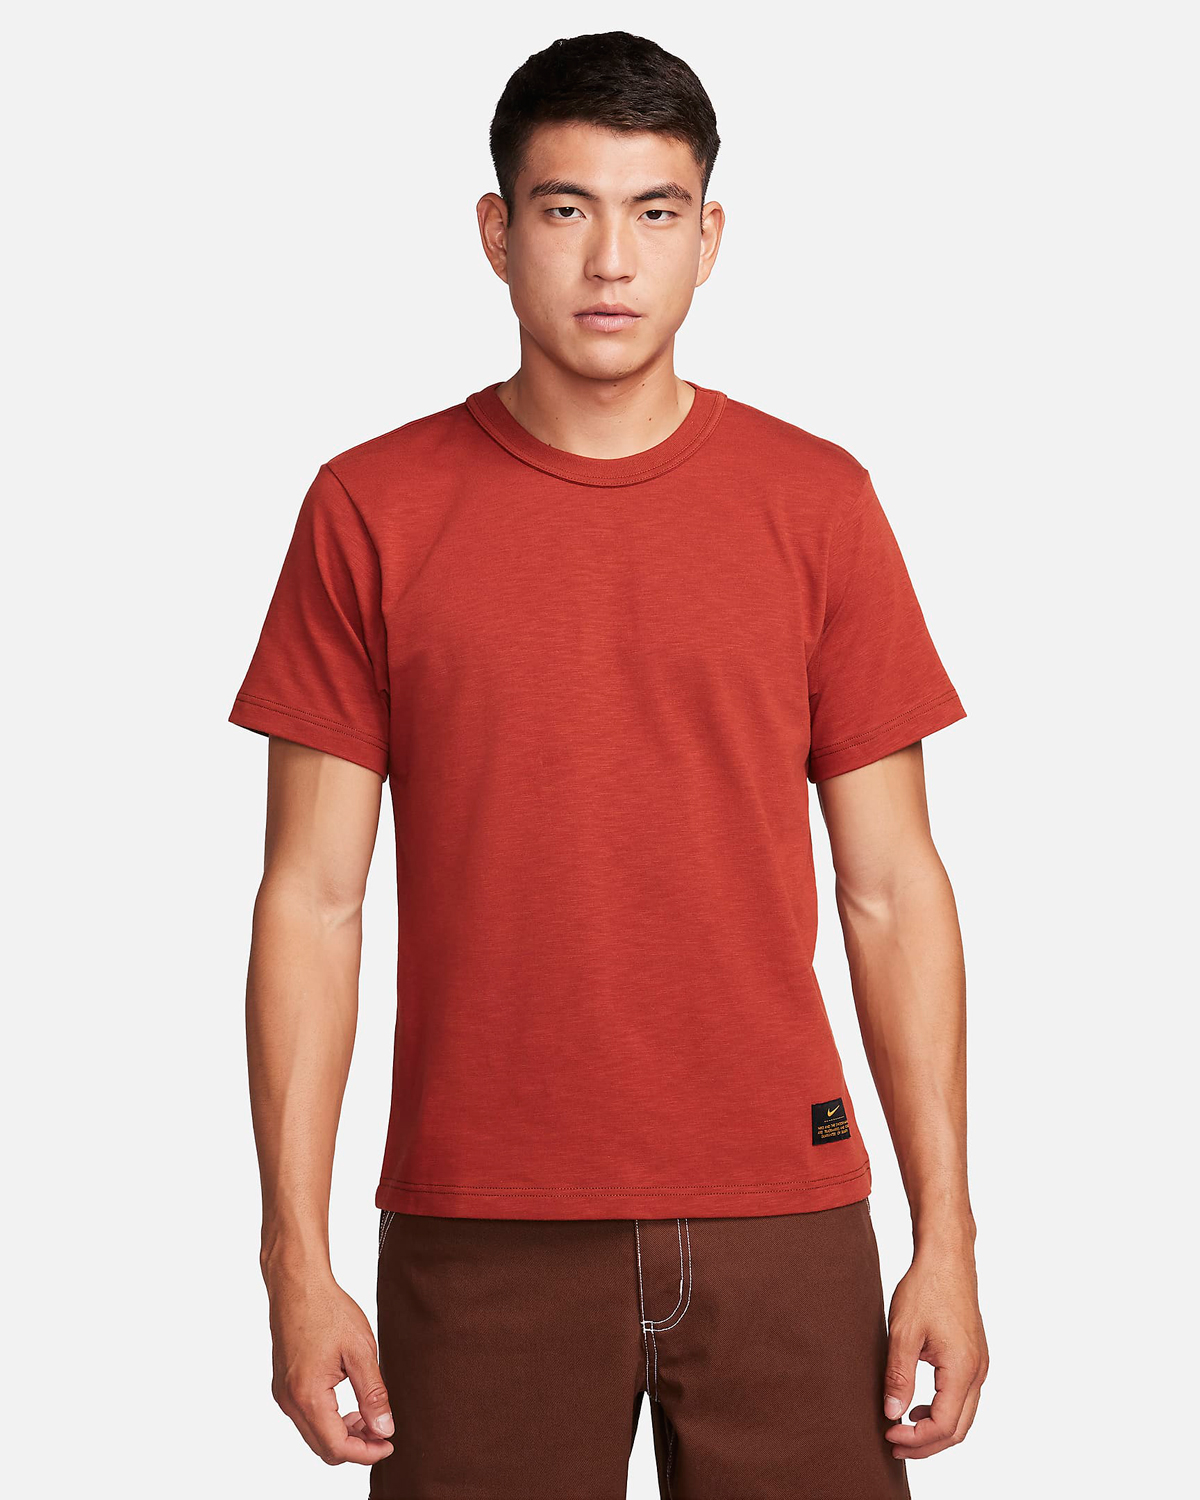 Nike-Life-T-Shirt-Rugged-Orange-1